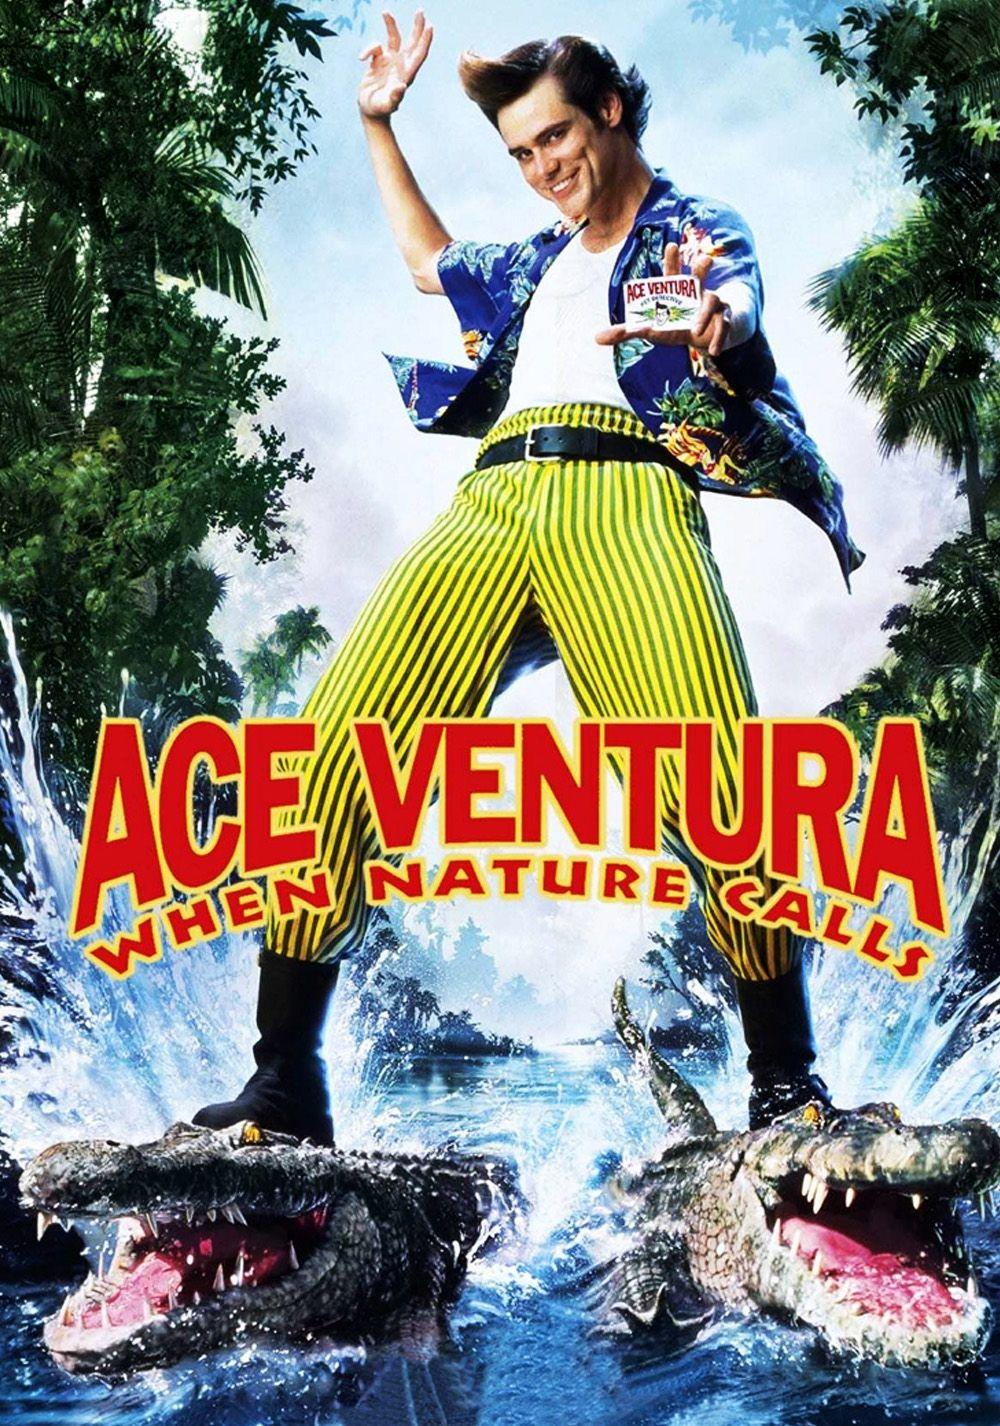 Ace Ventura: When Nature Calls Movie Wallpaper